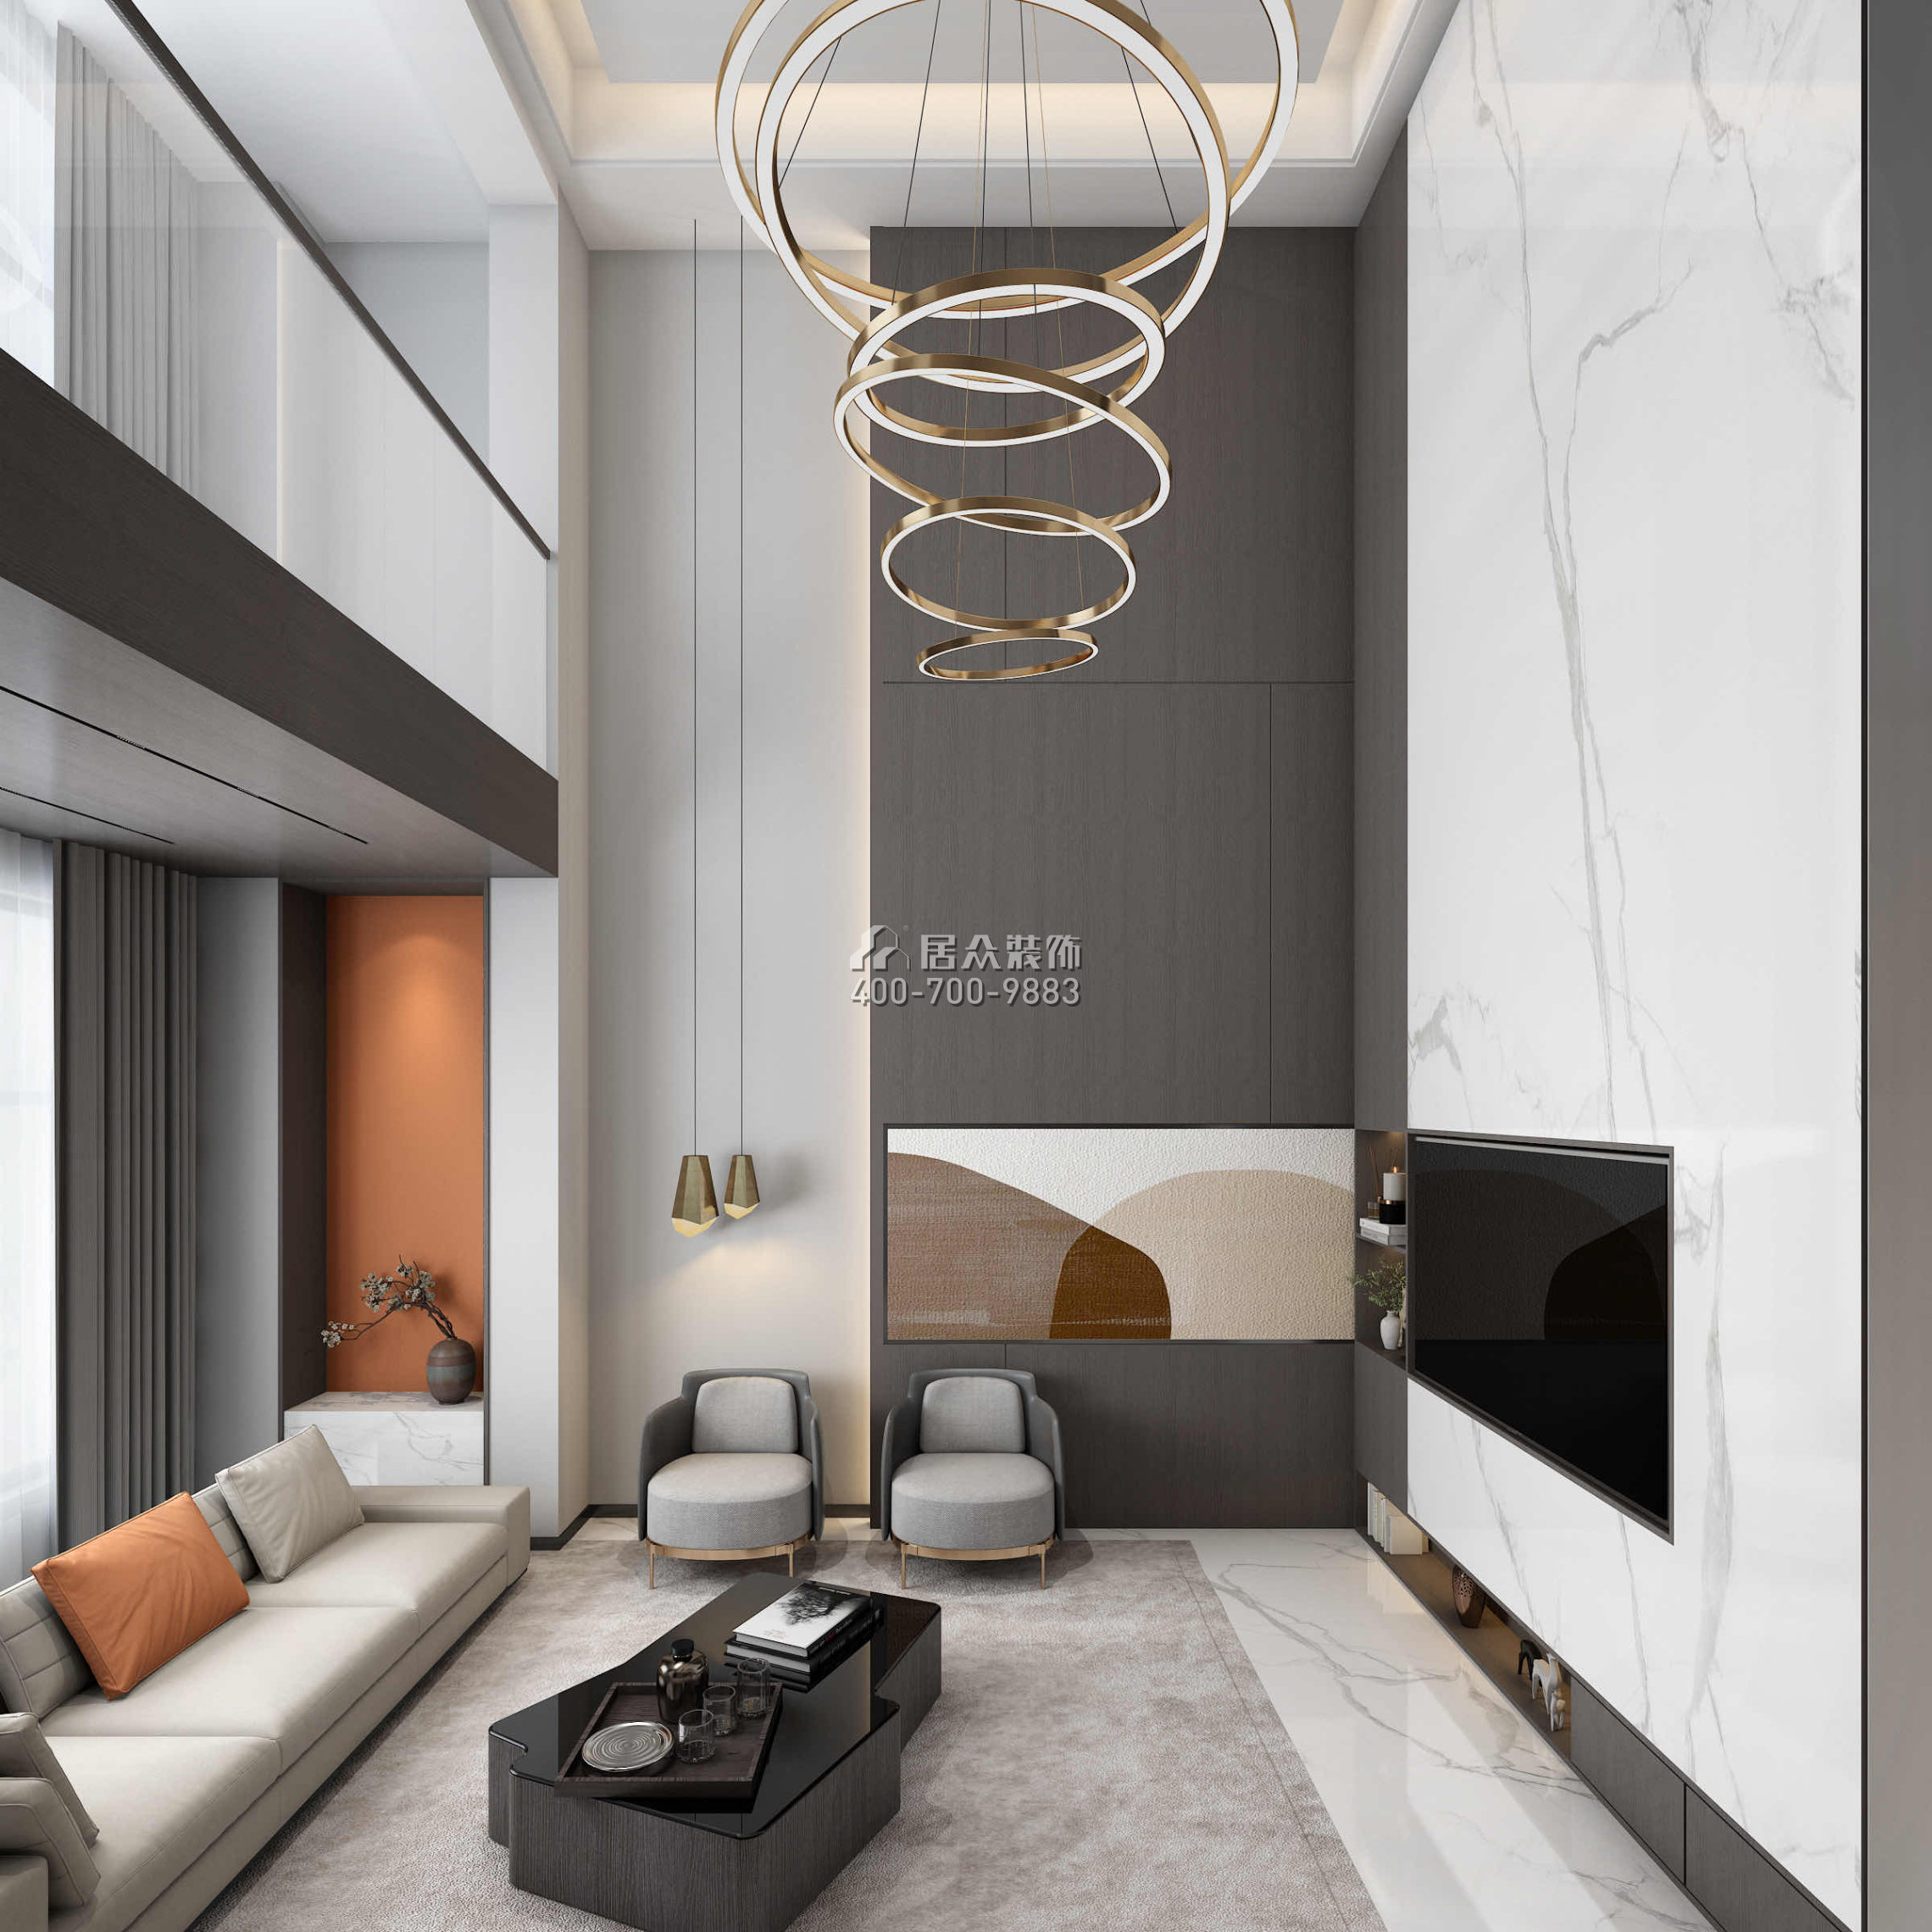 碧桂園柳葉府300平方米現代簡約風格別墅戶型客廳裝修效果圖